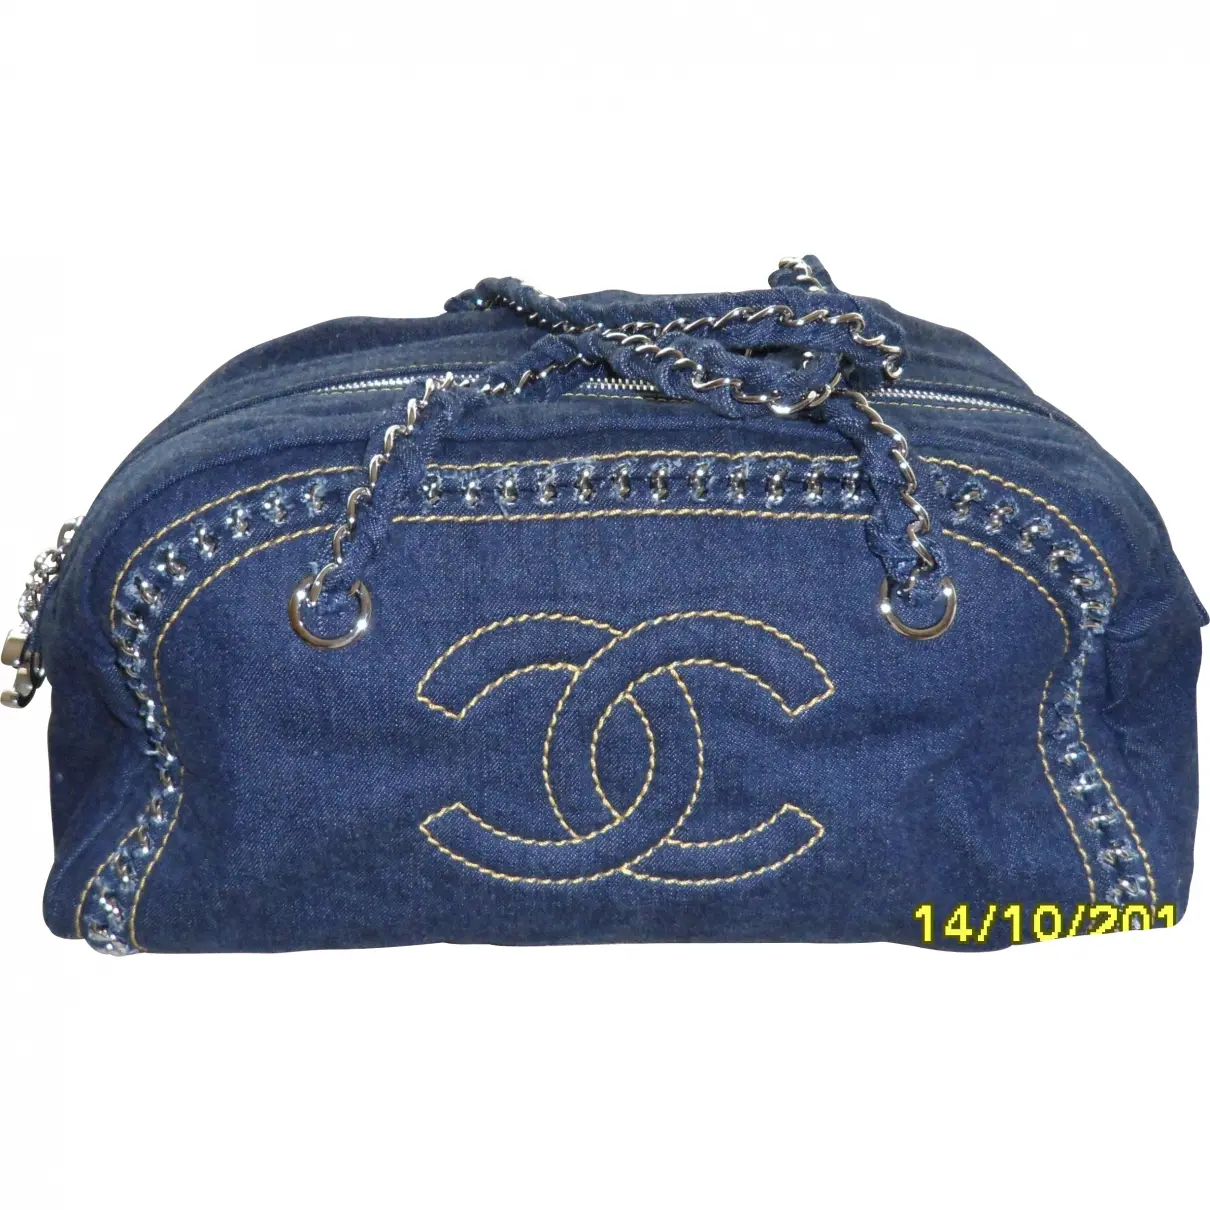 Blue Handbag Chanel